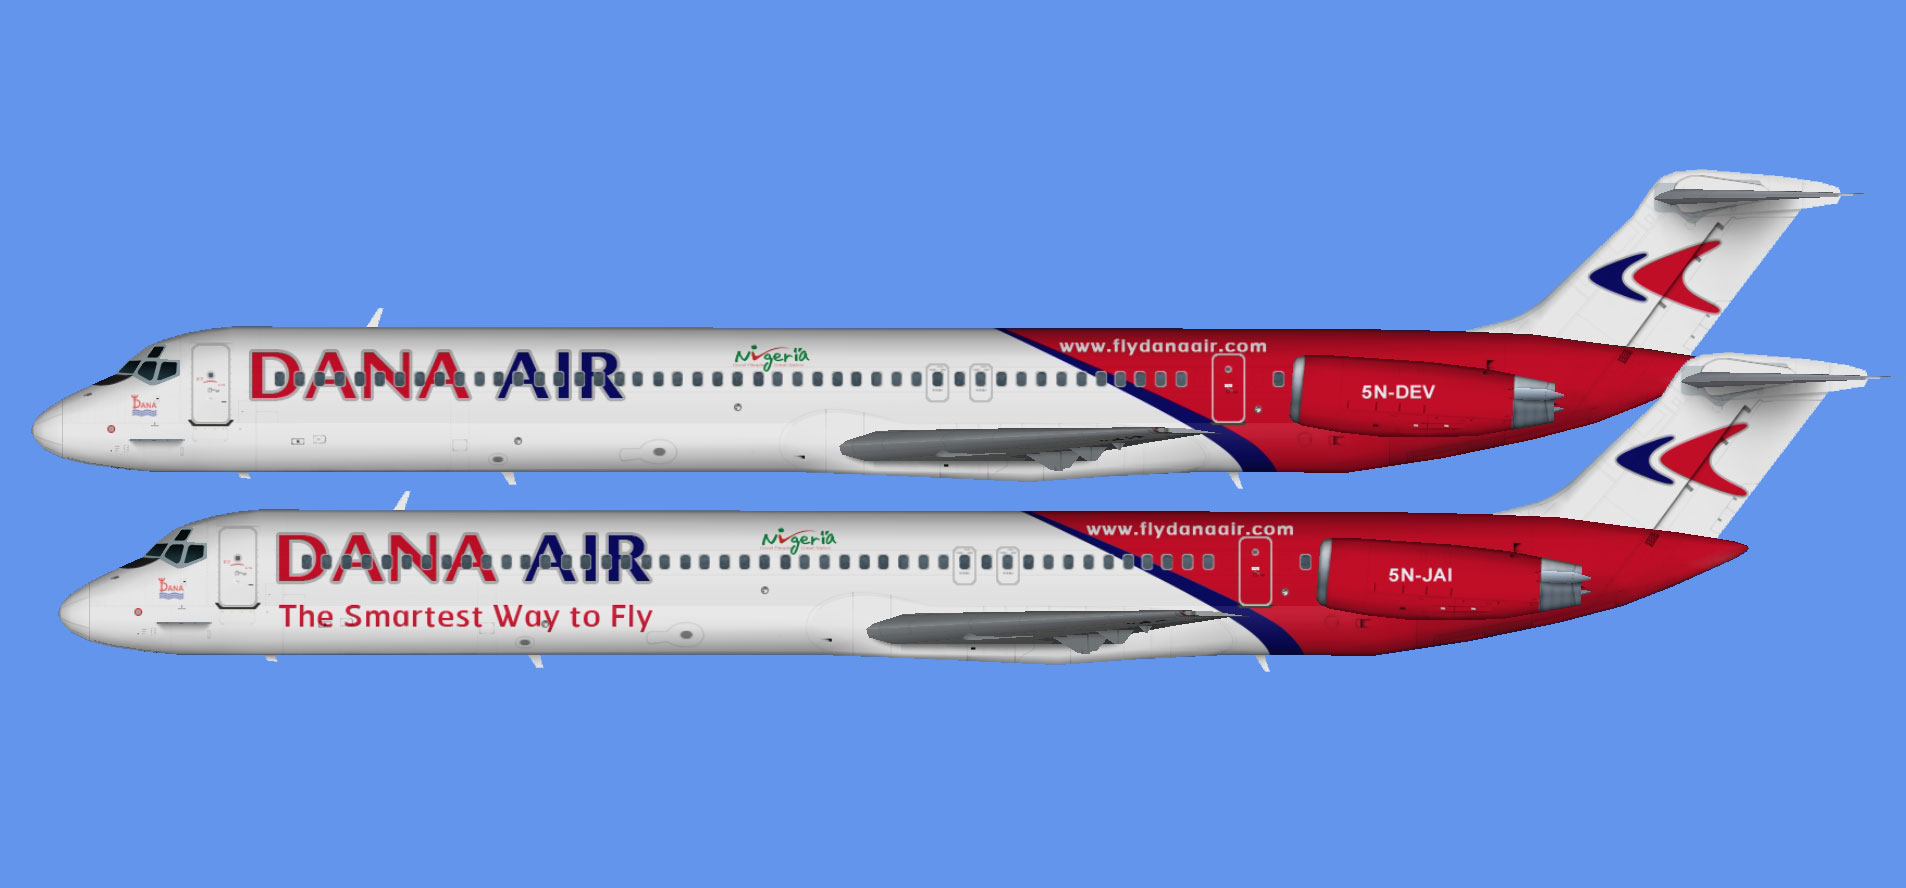 Dana Air MD-80